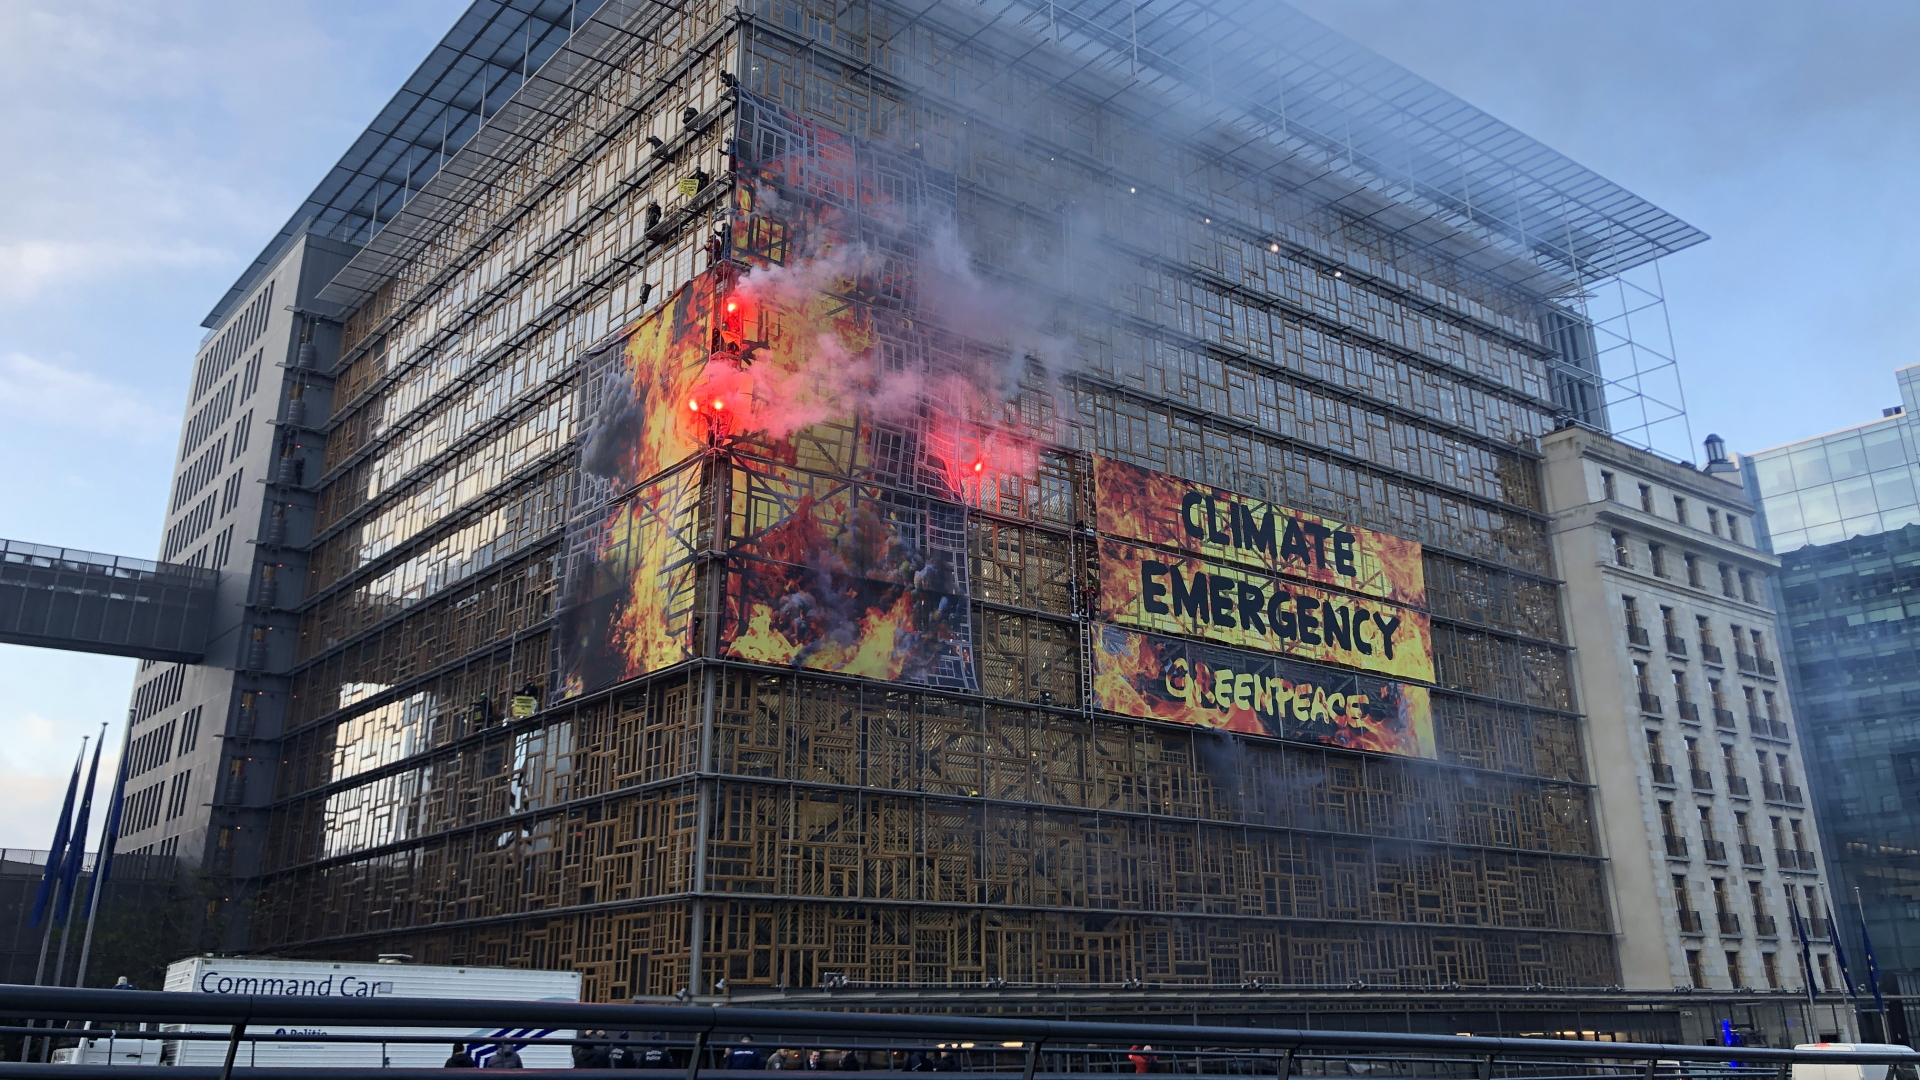 "Greenpeace"-Aktivisten haben an einer Fassade in Brüssel ein riesiges Transparent mit der Aufschrift "Kliamnotstand" aufgehängt und Bengalos gezündet. | dpa